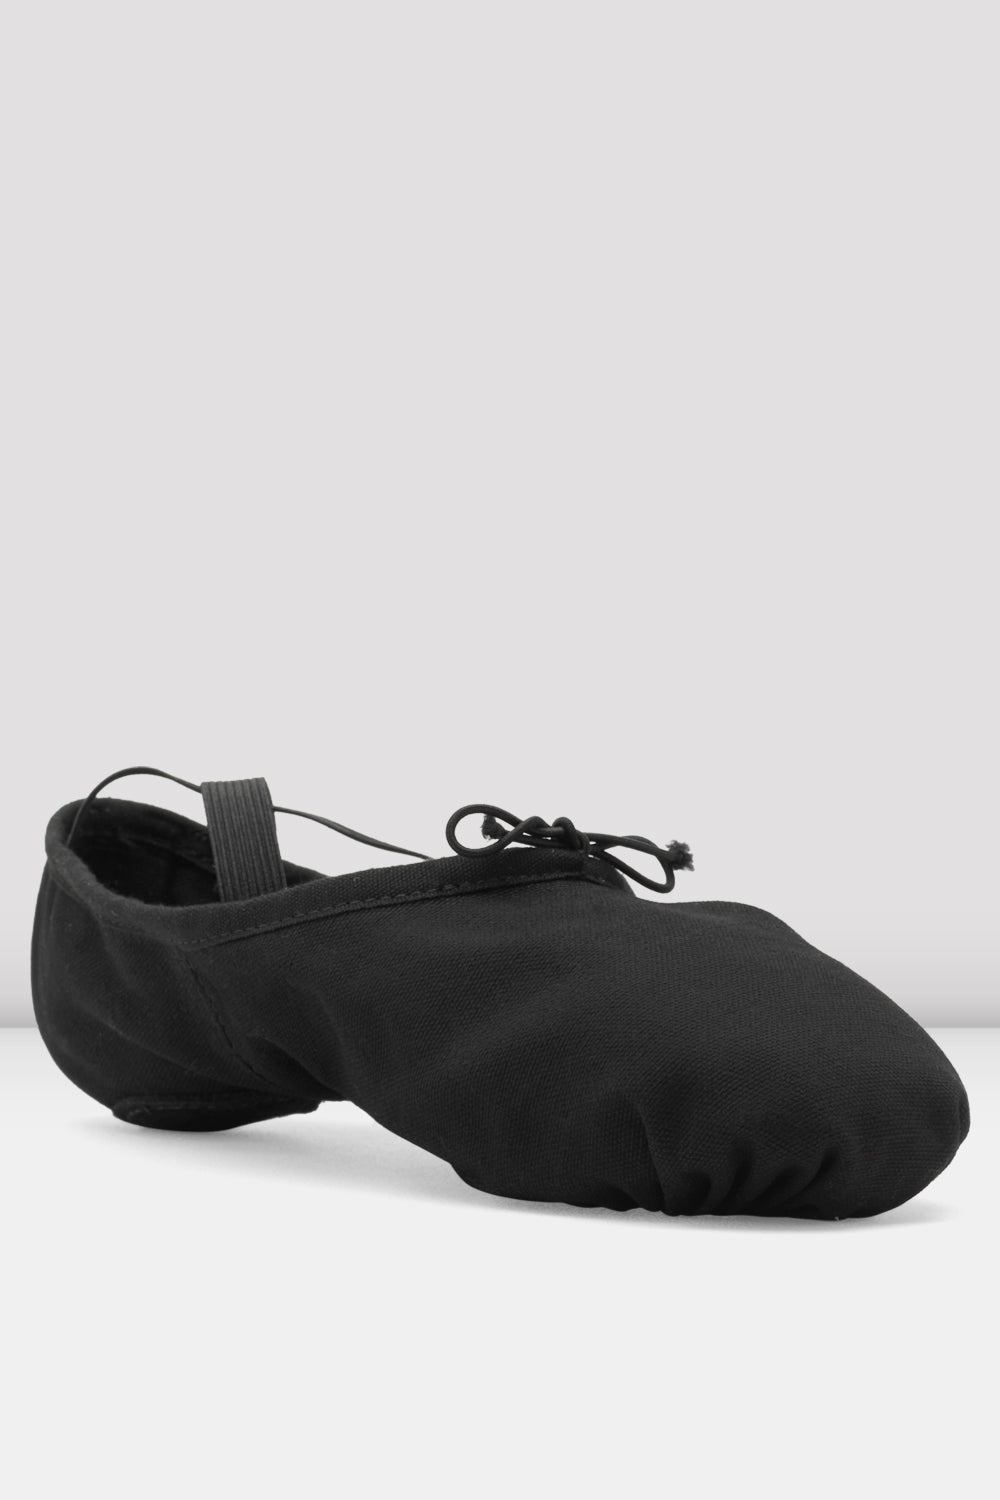 Mens Pump Canvas Ballet Shoes, Black | BLOCH UK